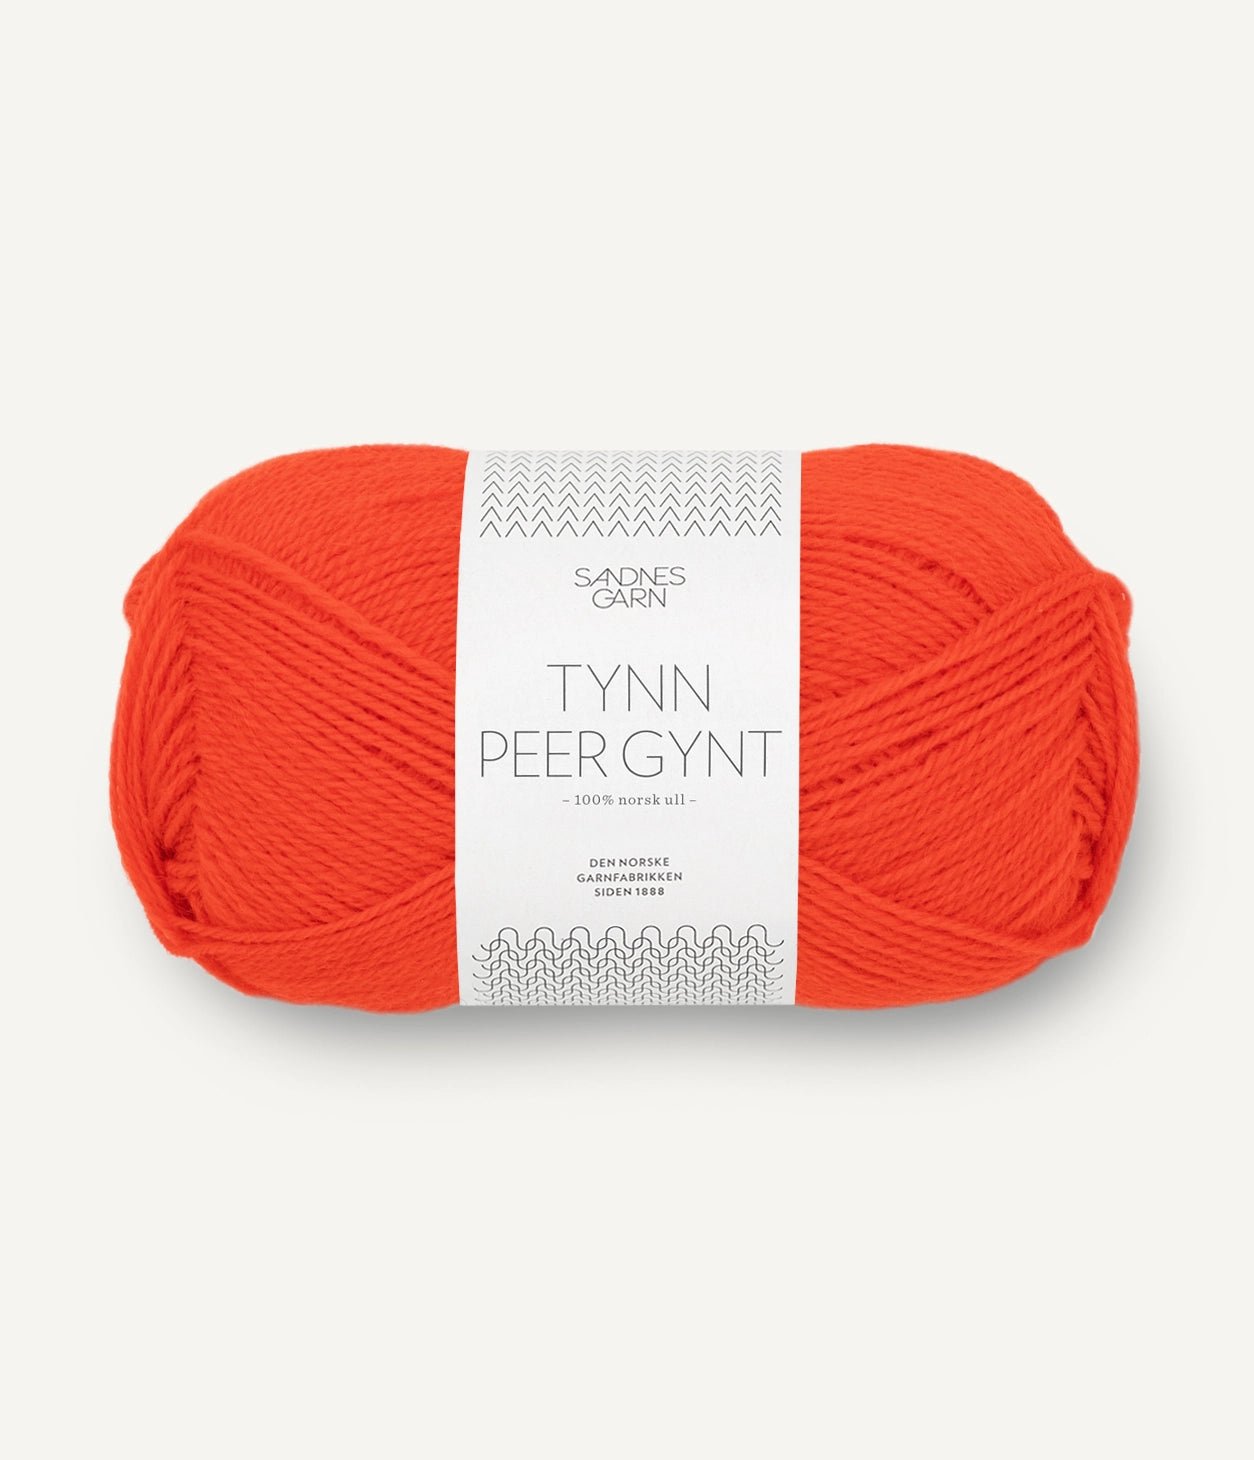 TYNN PEER GYNT von SANDNES jetzt online kaufen bei OONIQUE